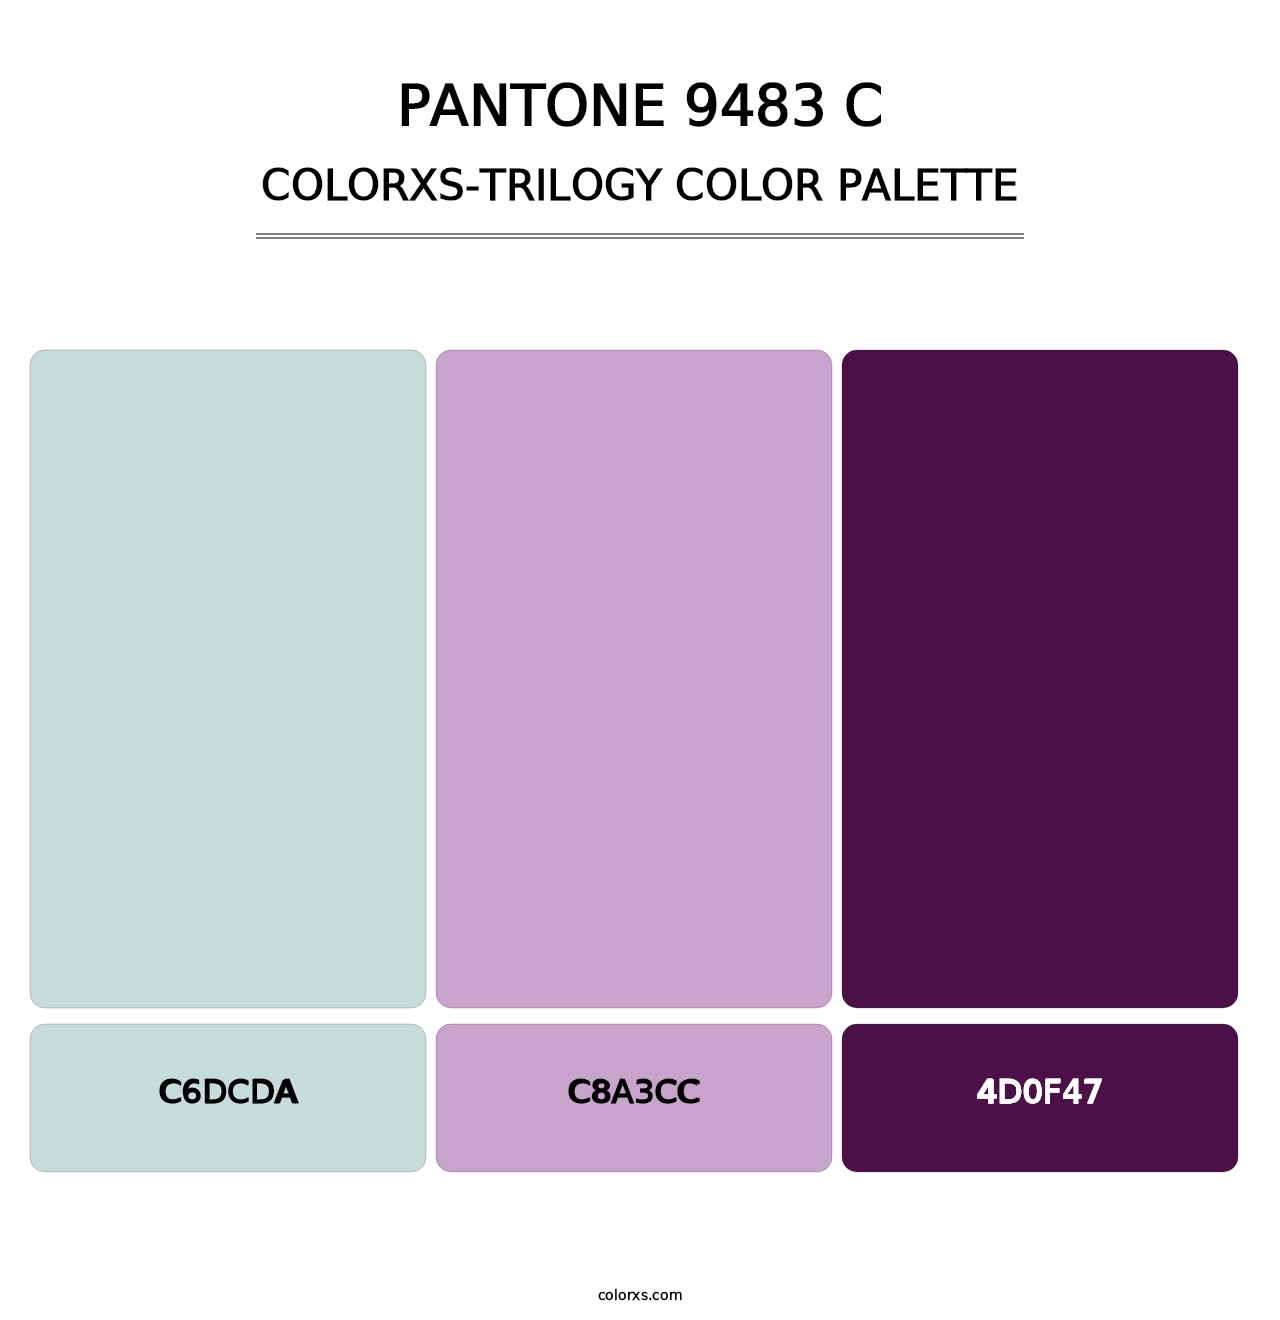 PANTONE 9483 C - Colorxs Trilogy Palette